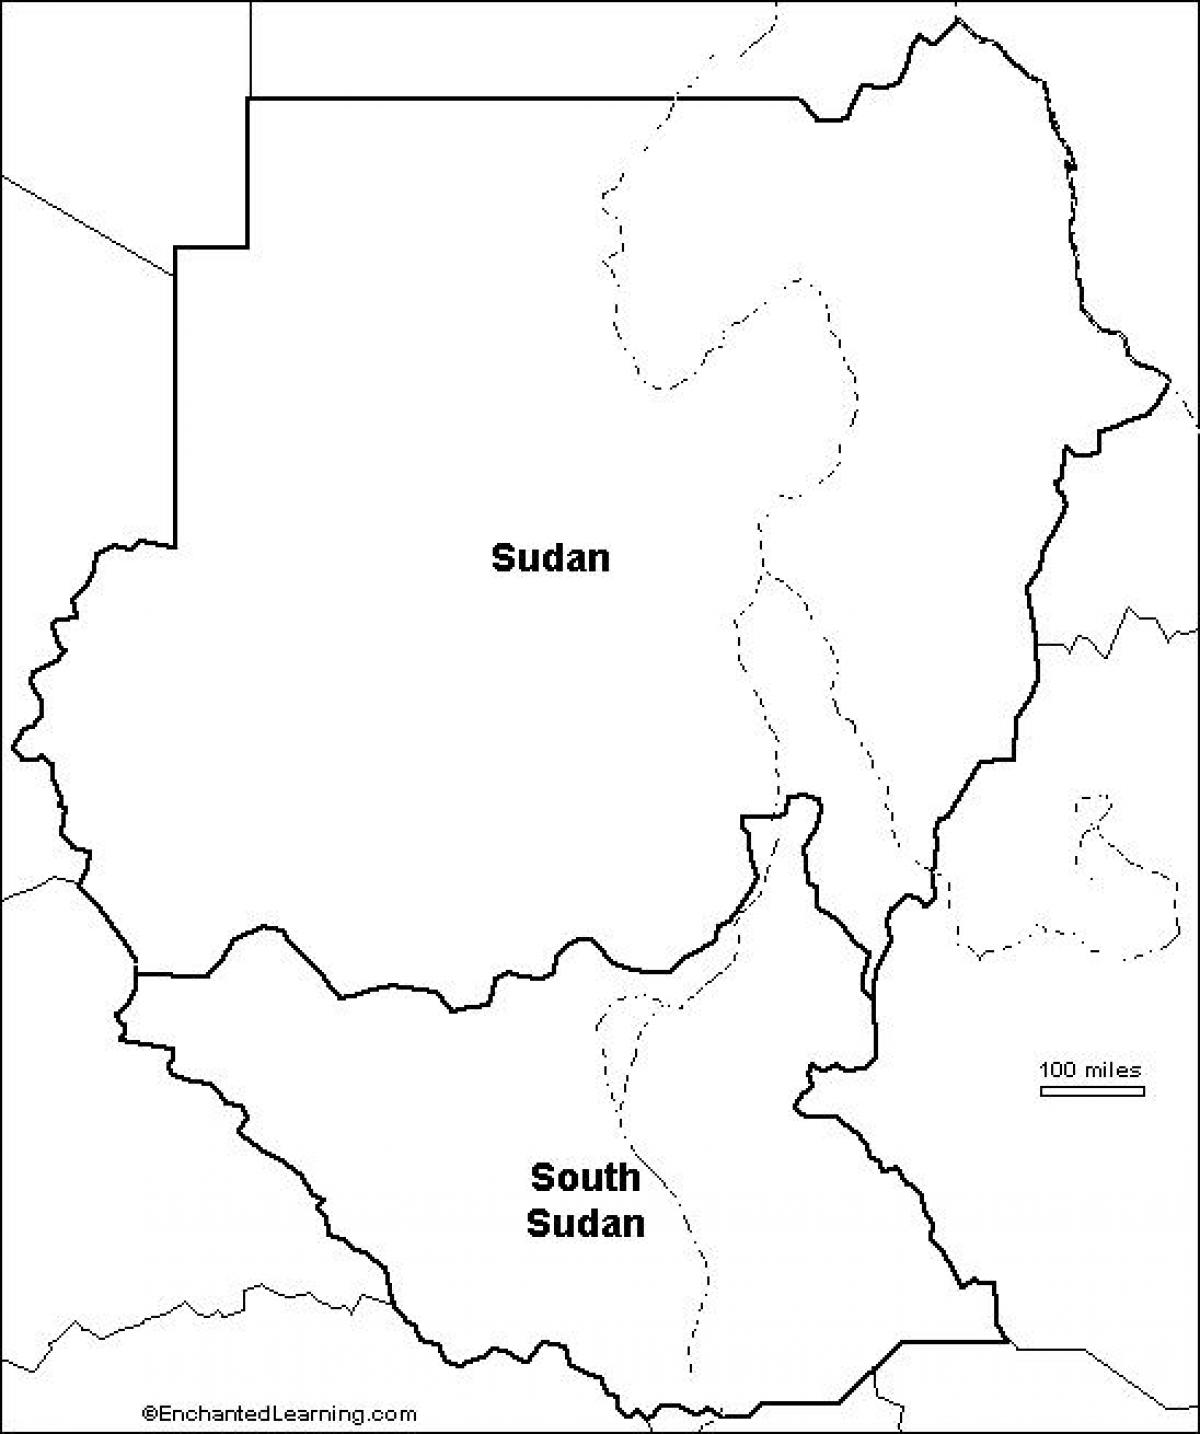 Mappa del Sudan vuoto